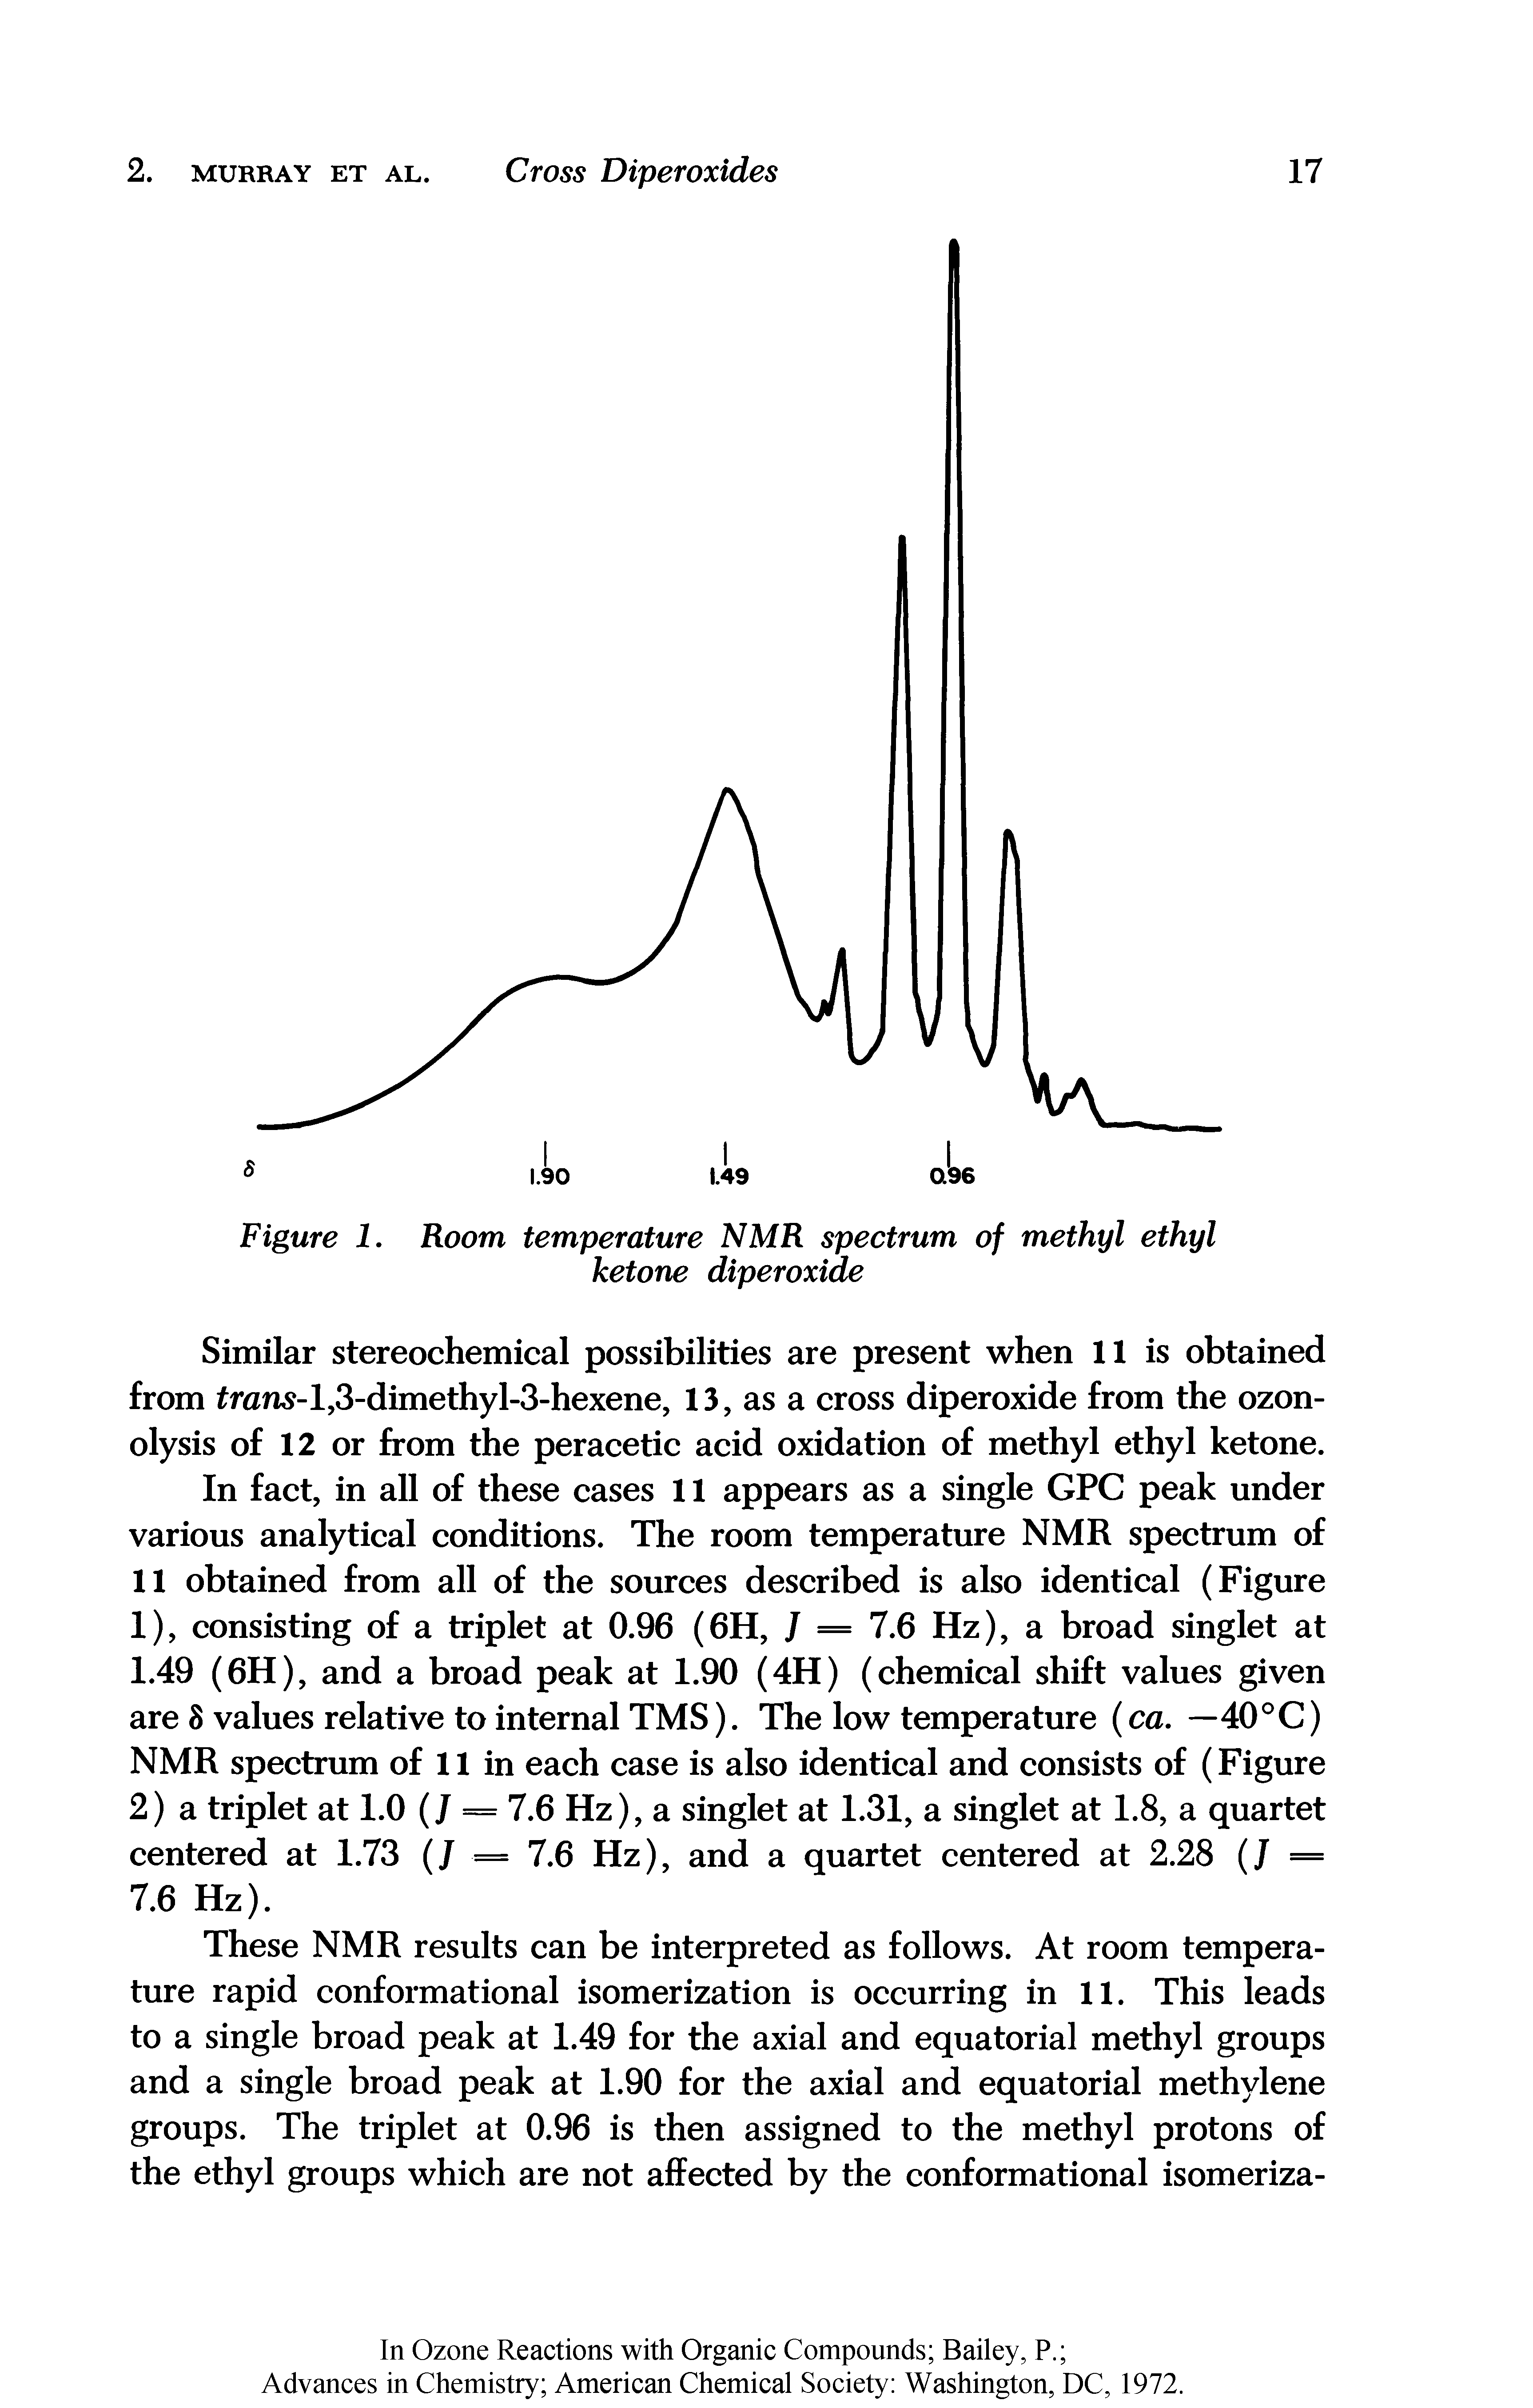 Figure 1. Room temperature NMR spectrum of methyl ethyl ketone diperoxide...